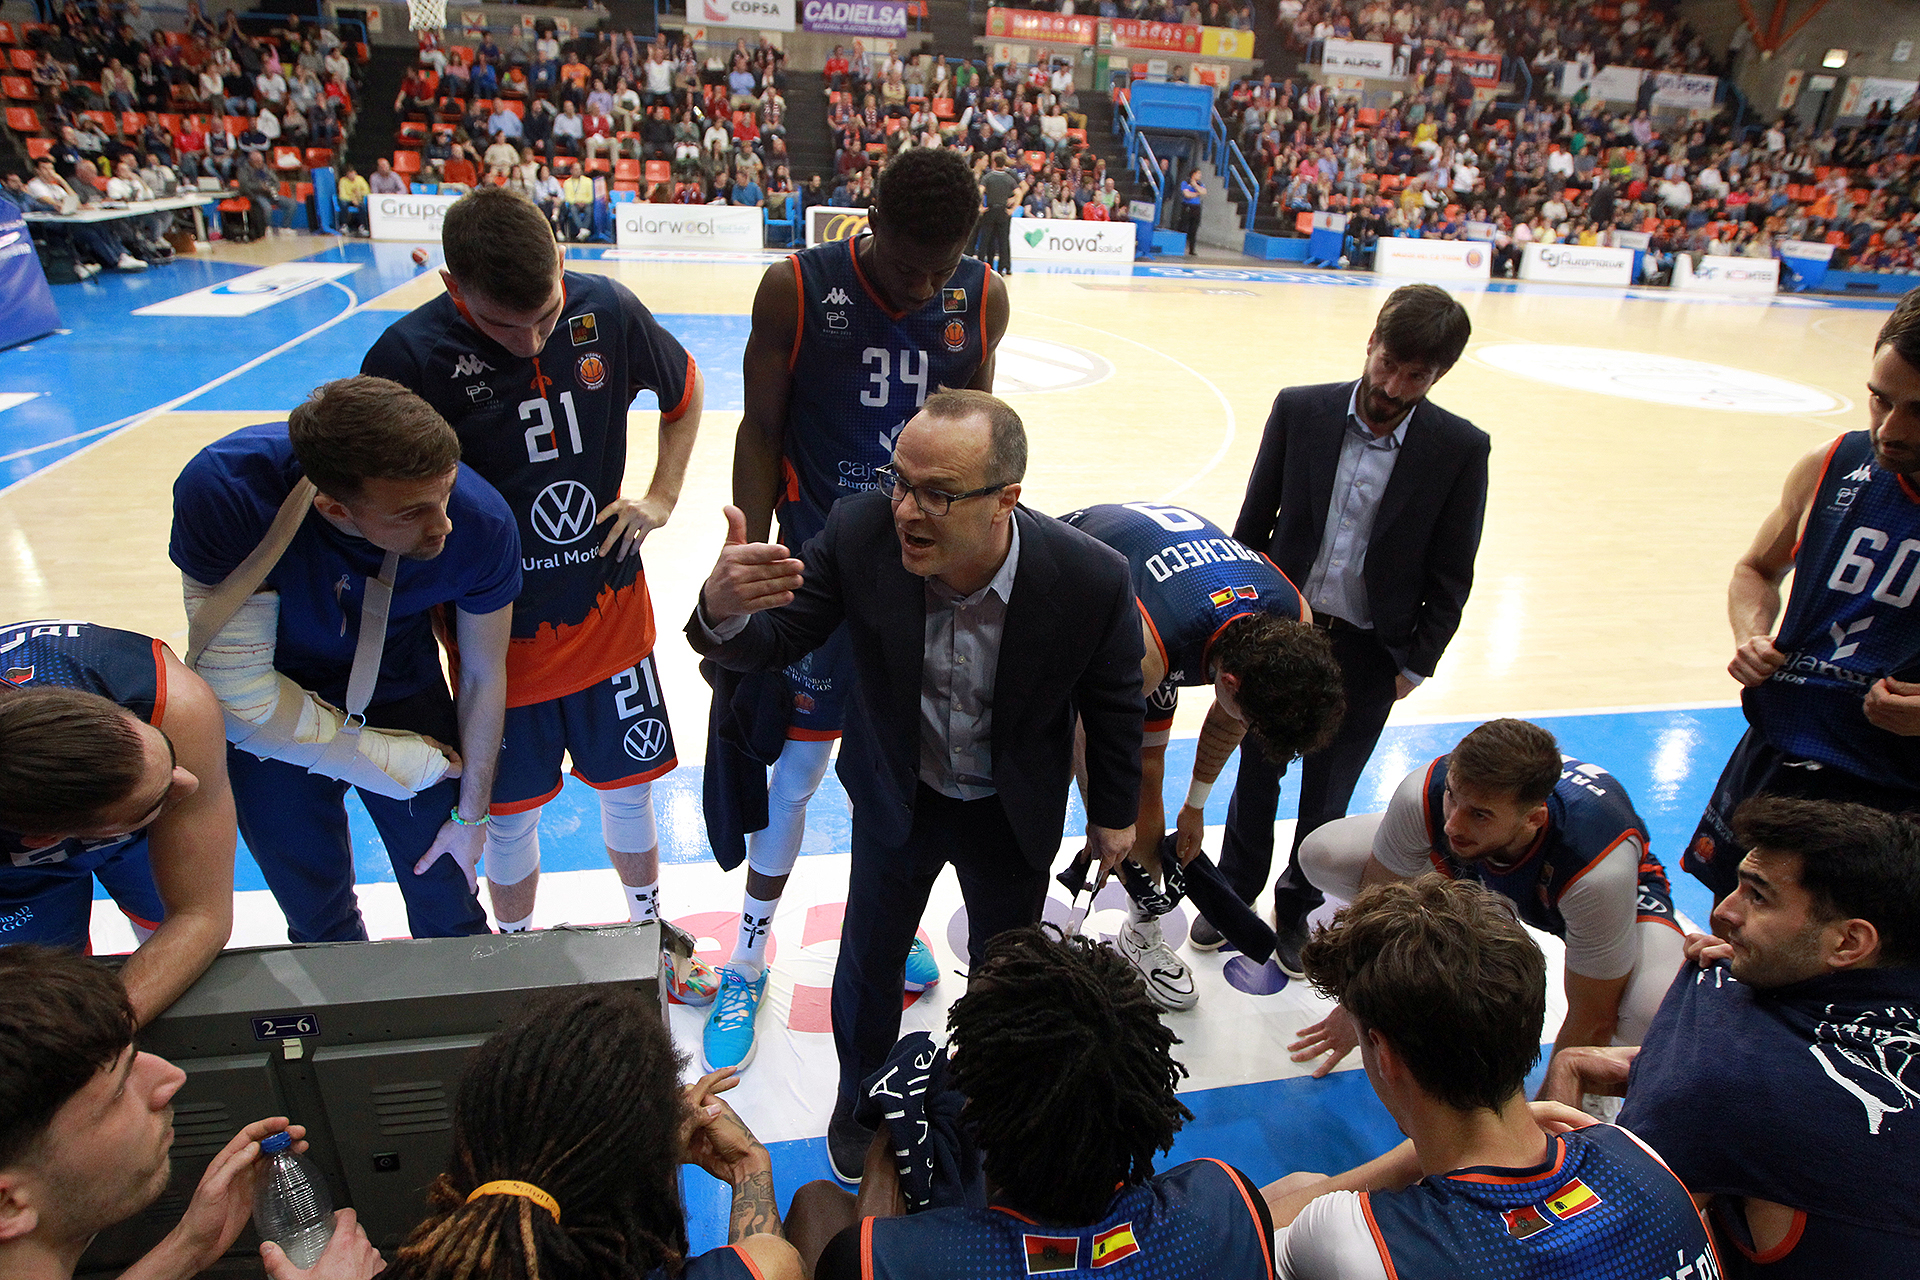 Grupo Ureta Tizona Burgos y el Guuk Gipuzkoa Basket.